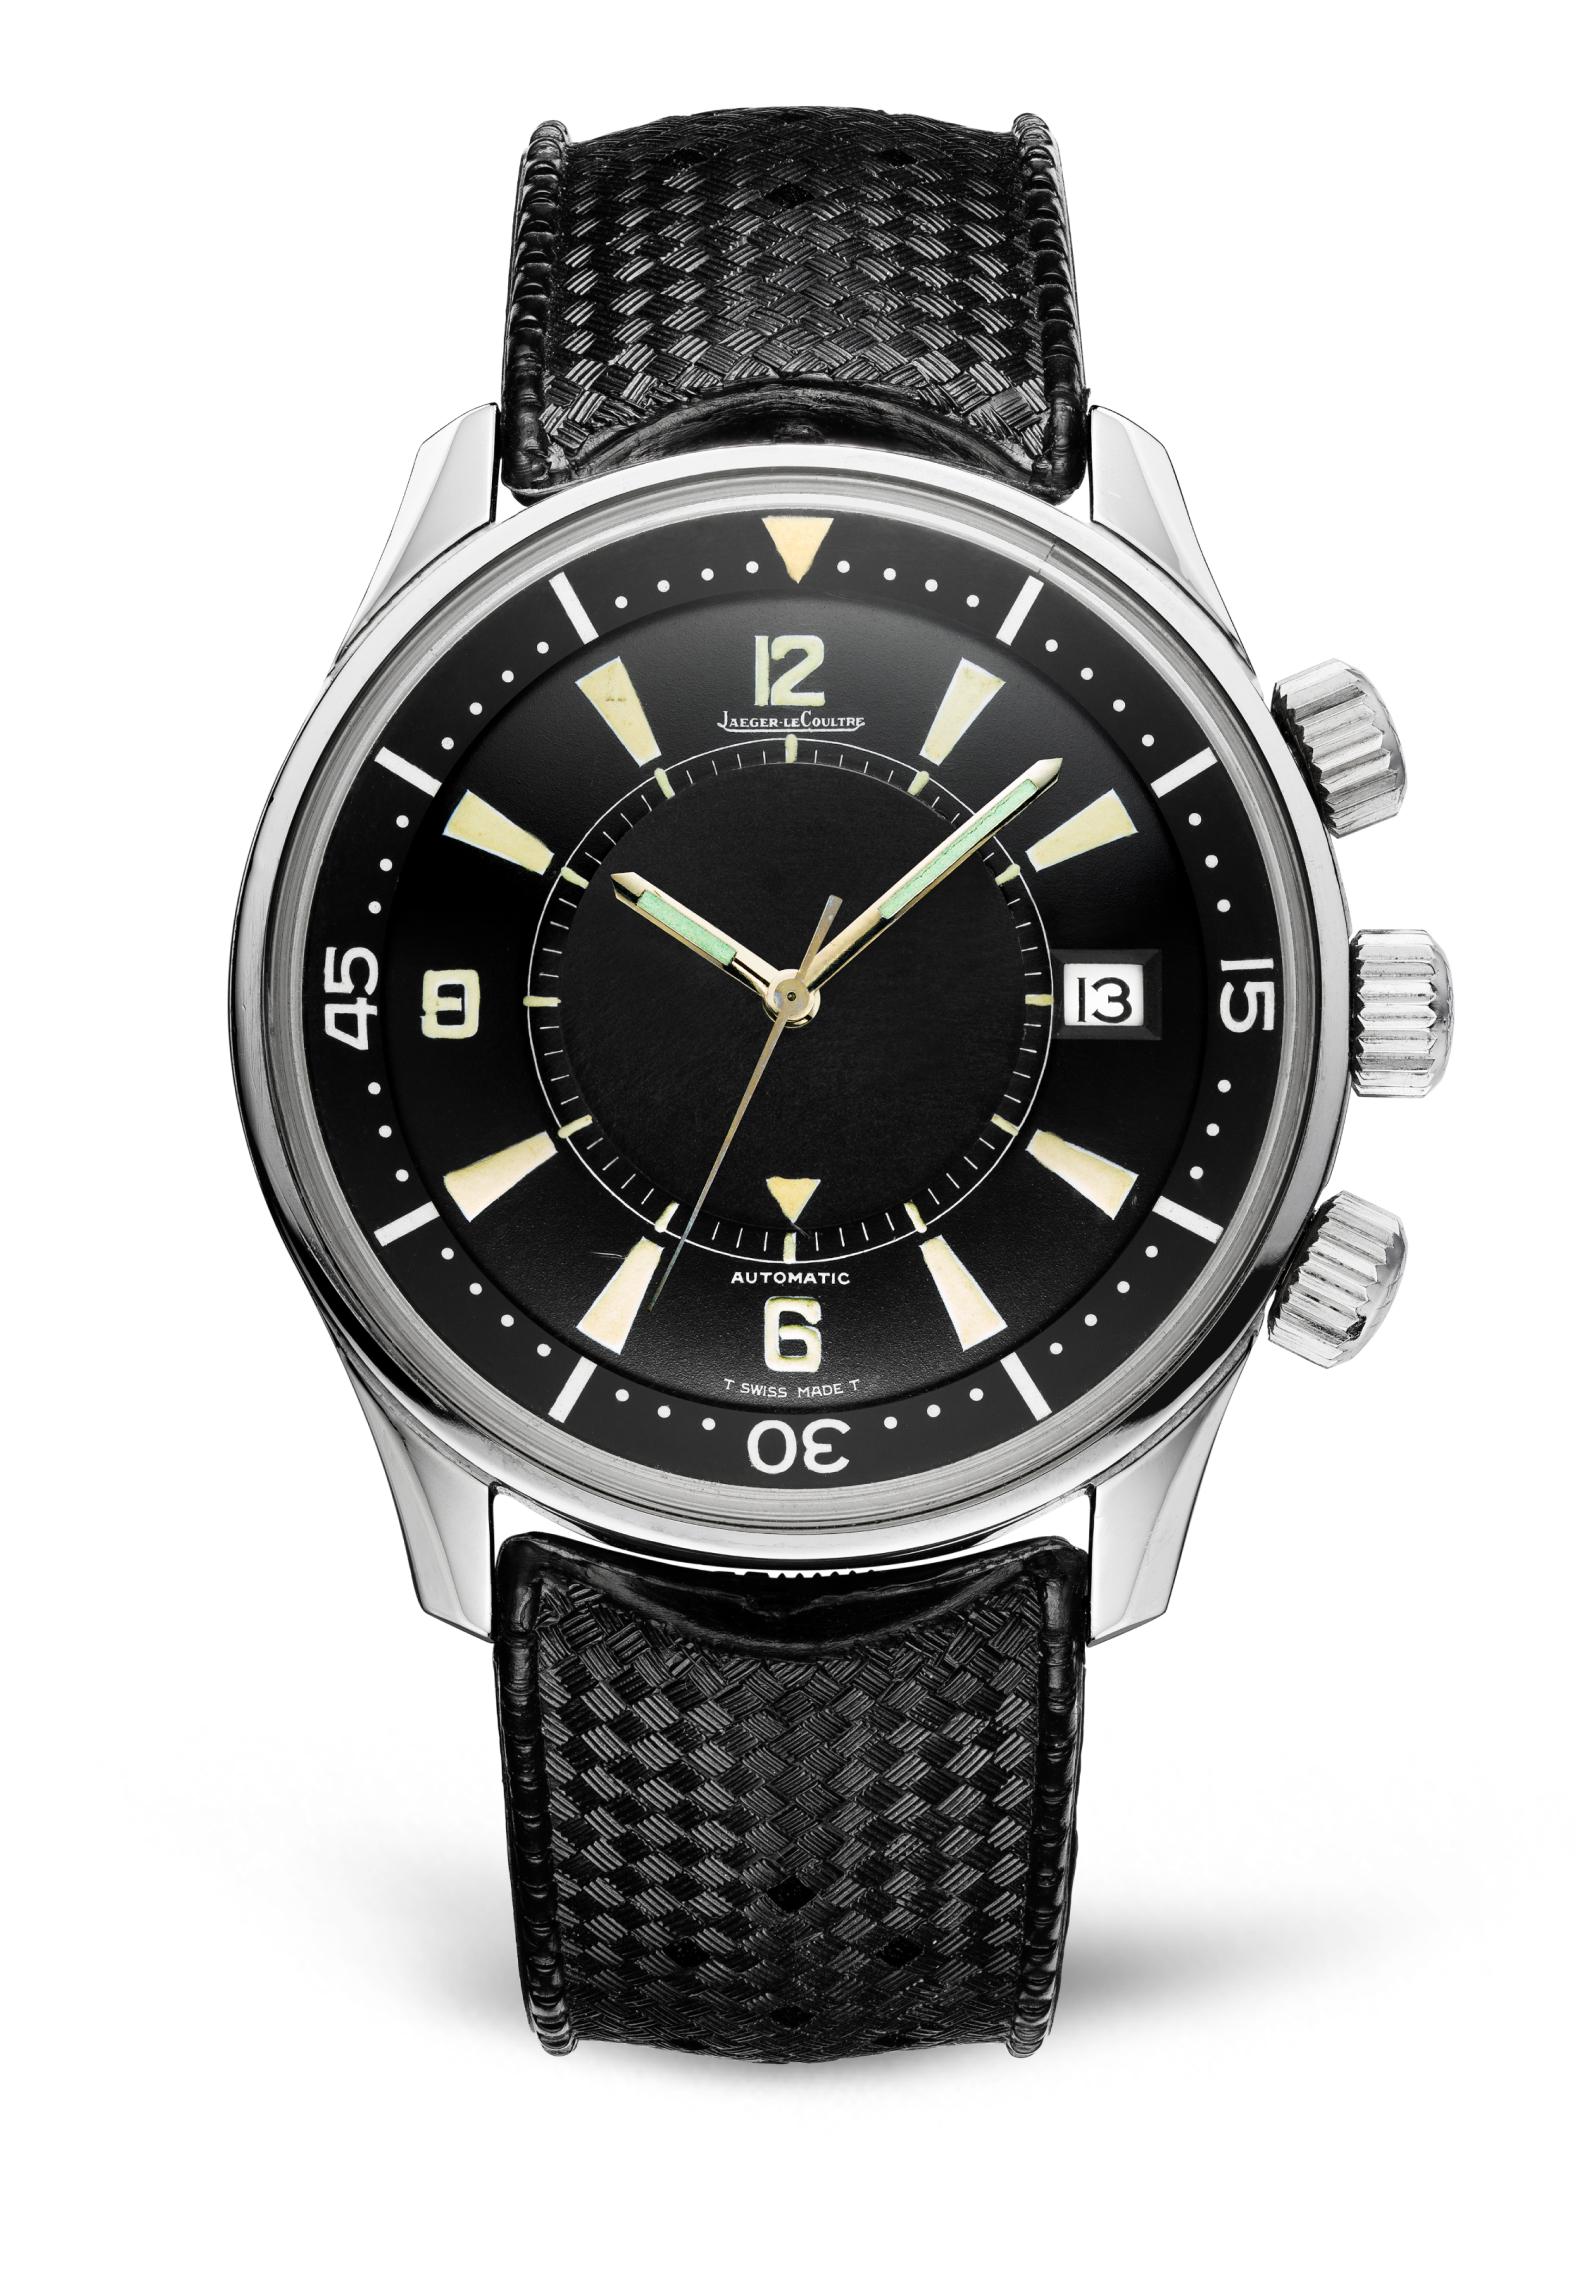 Часы Memovox Polaris, Jaeger-LeCoultre, 1968 год